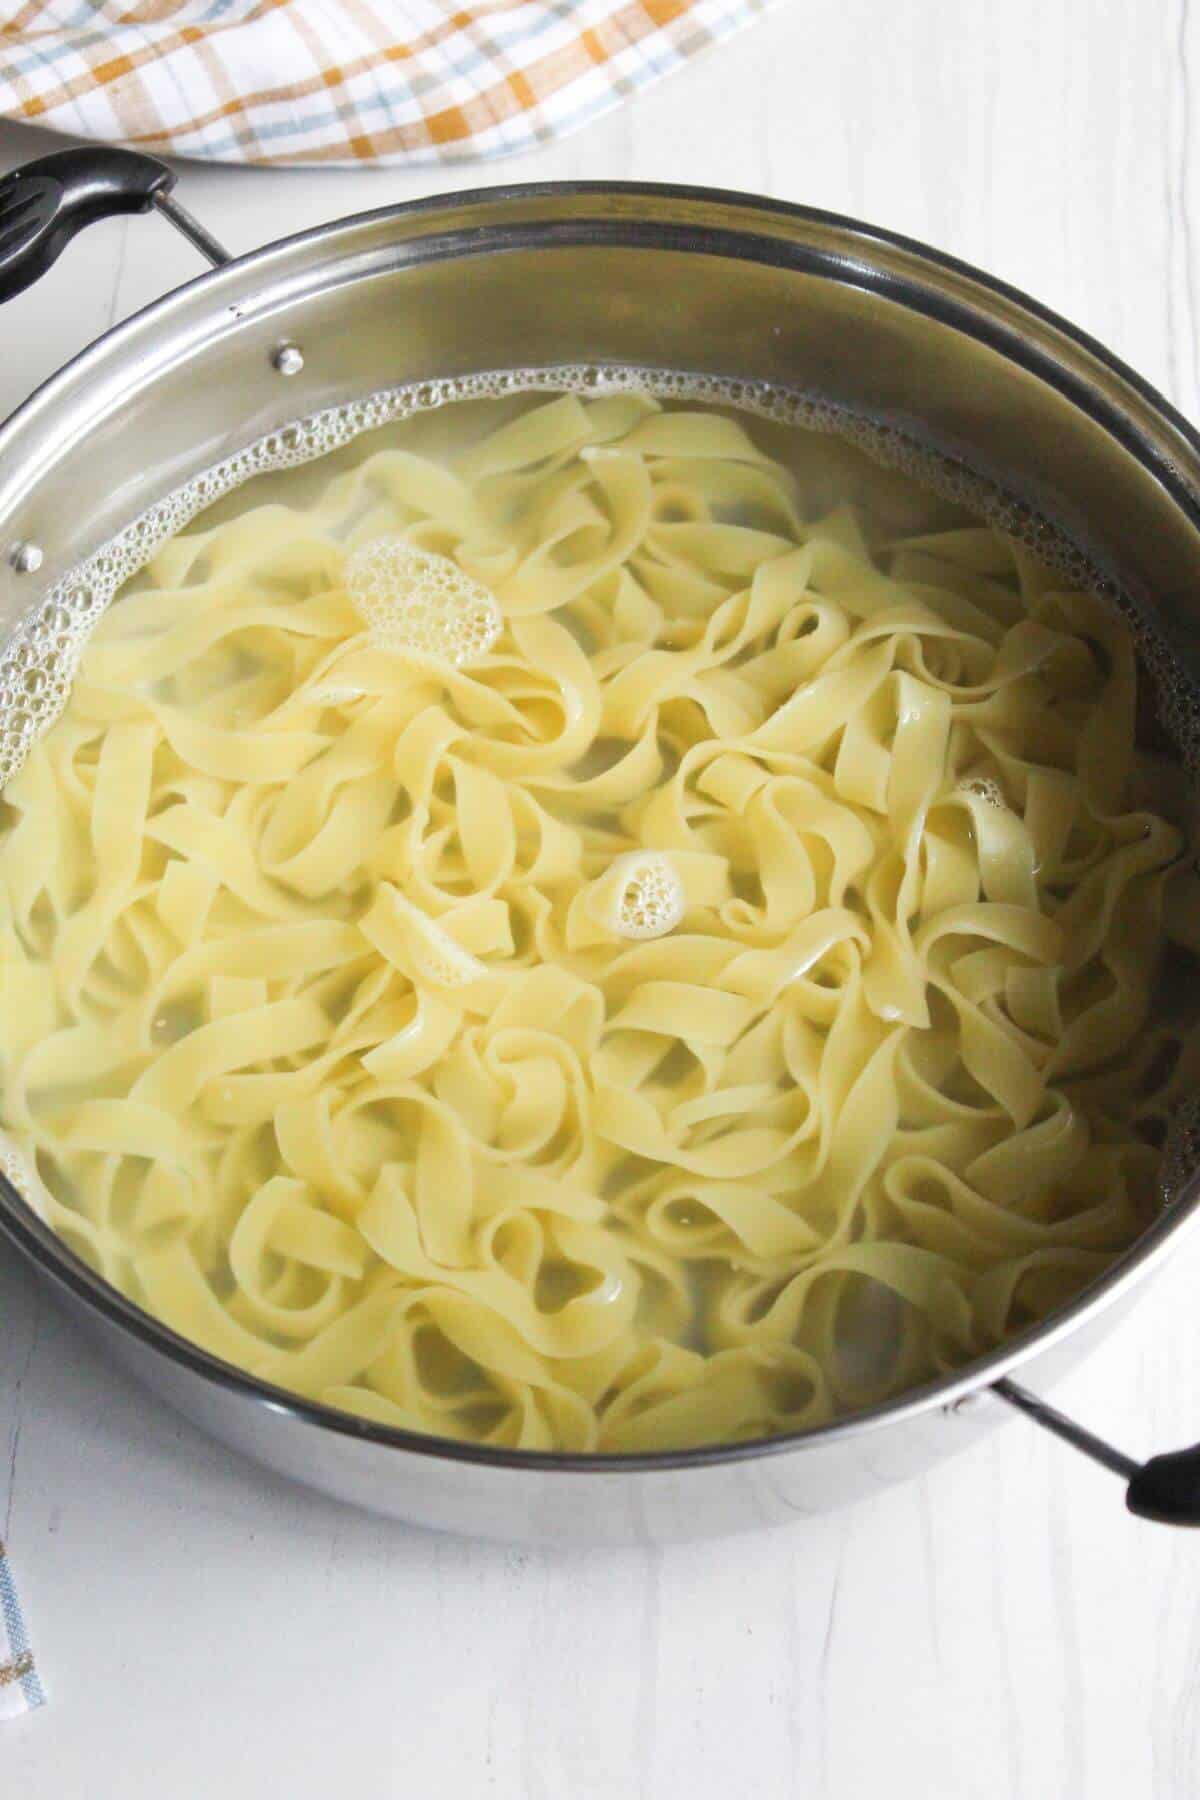 Boiled noodles in pot.